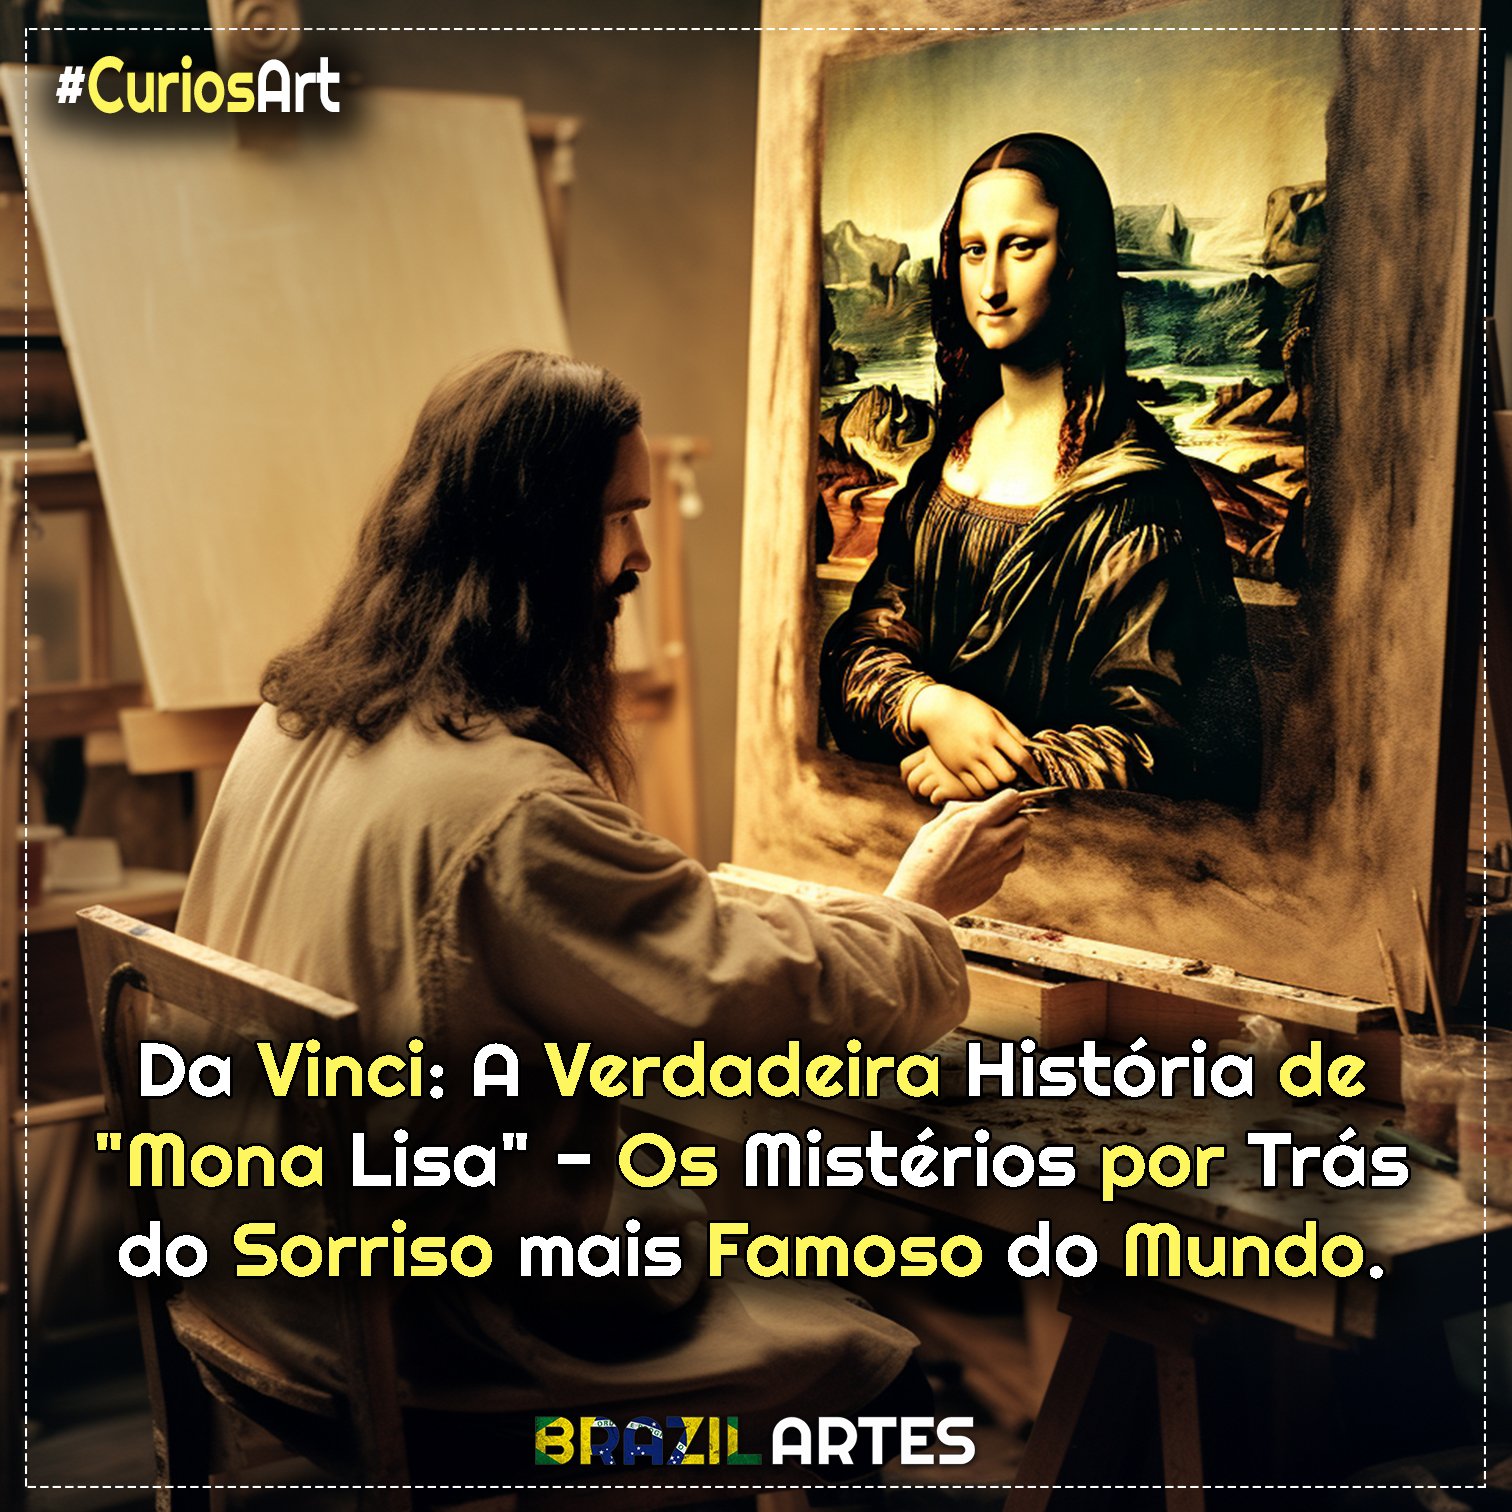 Da Vinci A Verdadeira História de Mona Lisa Os Mistérios por Trás do Sorriso mais Famoso do